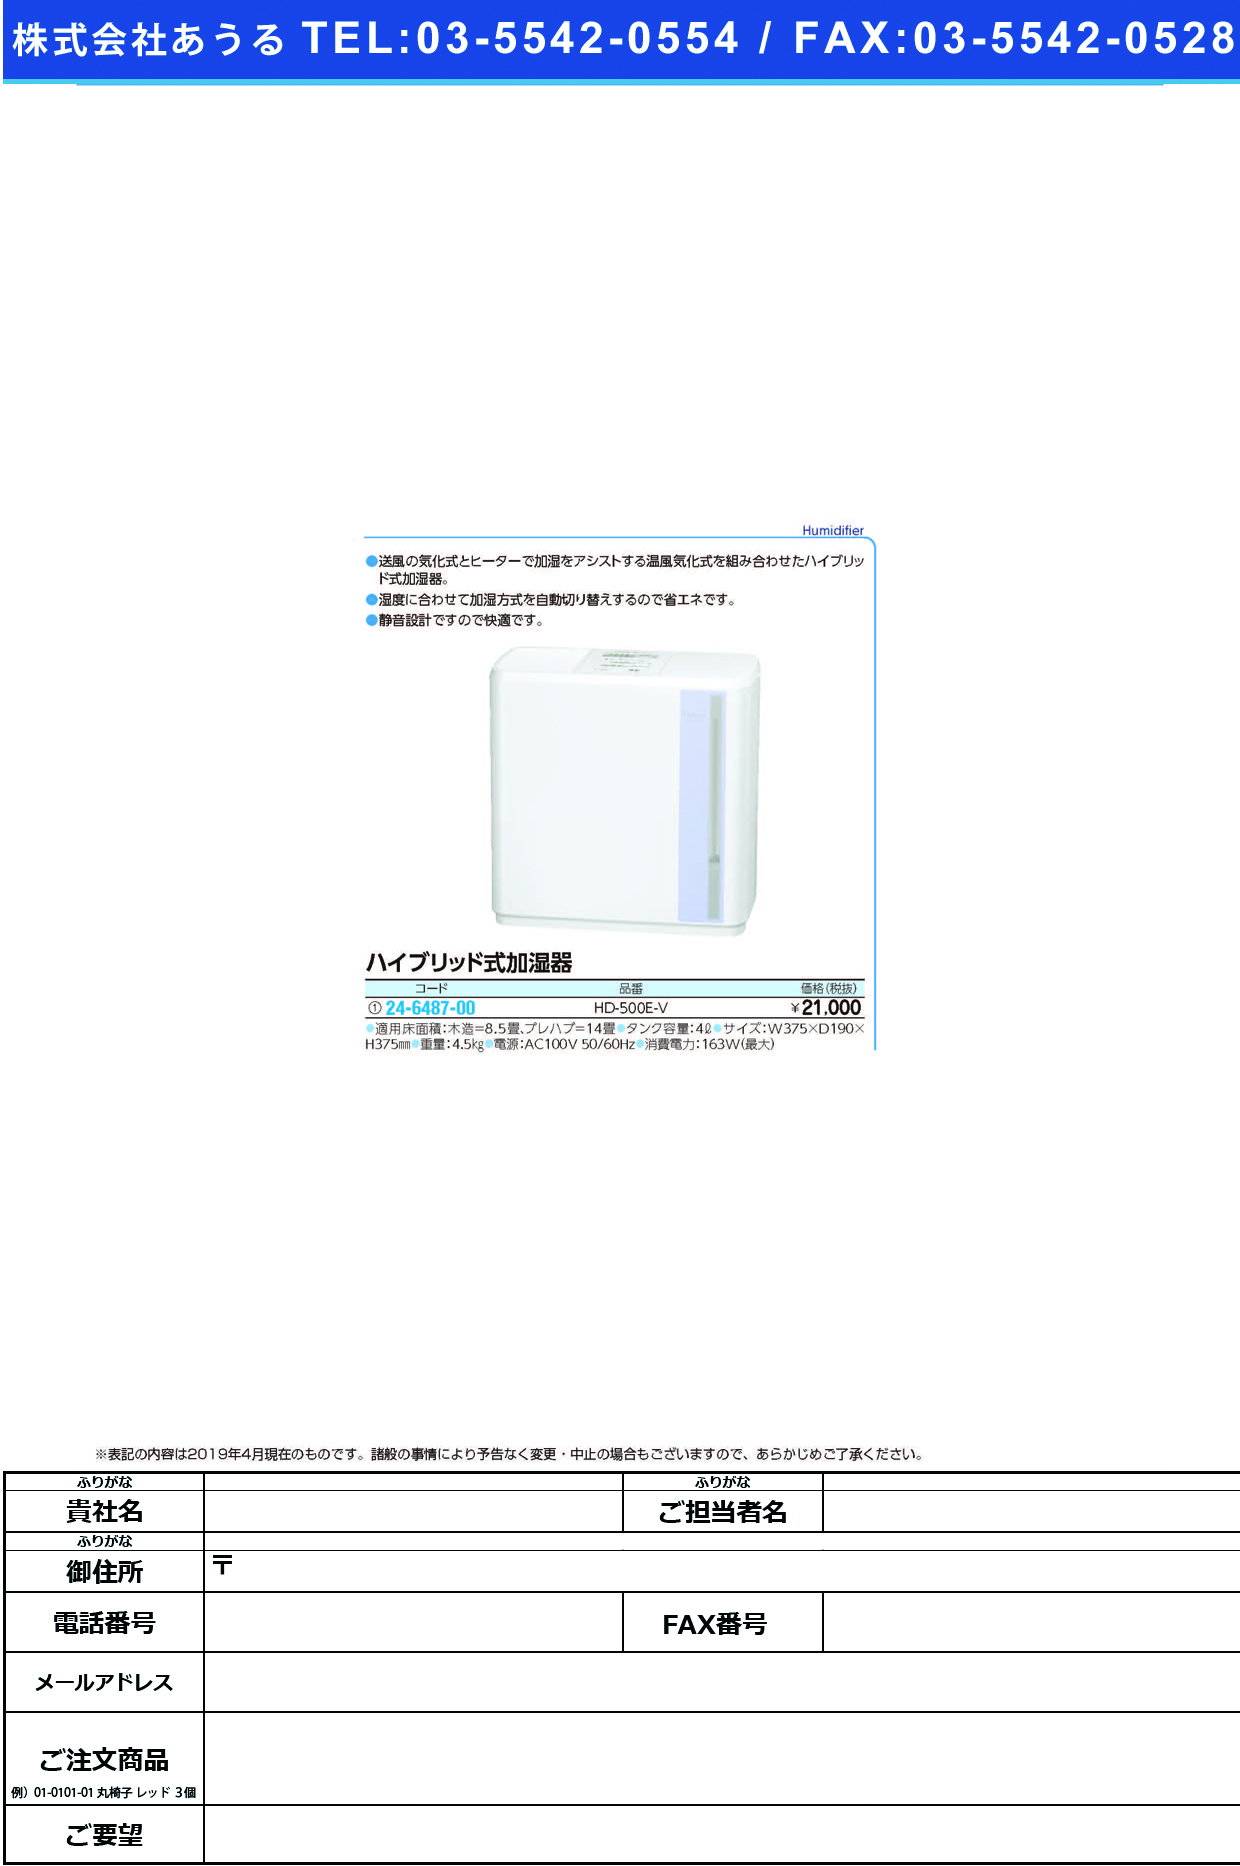 (24-6487-00)ハイブリッド式加湿器 HD-500E-V(ﾗﾍﾞﾝﾀﾞｰ) ﾊｲﾌﾞﾘｯﾄﾞｼｷｶｼﾂｷ【1台単位】【2019年カタログ商品】